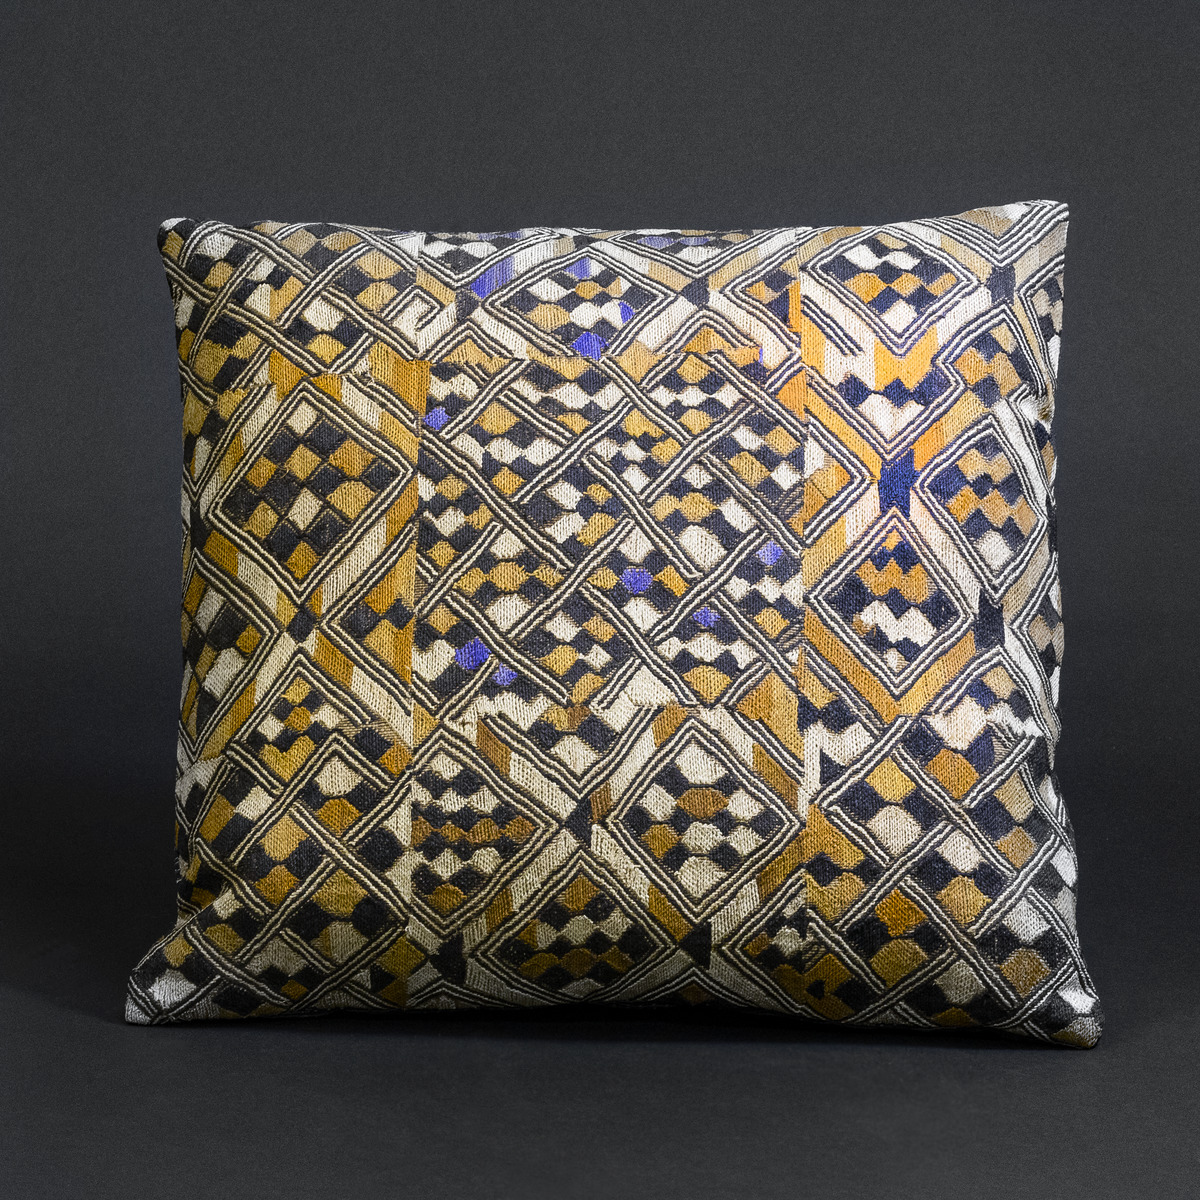 Vintage Kuba Fabric Cushion (Bakuba People, Congo)